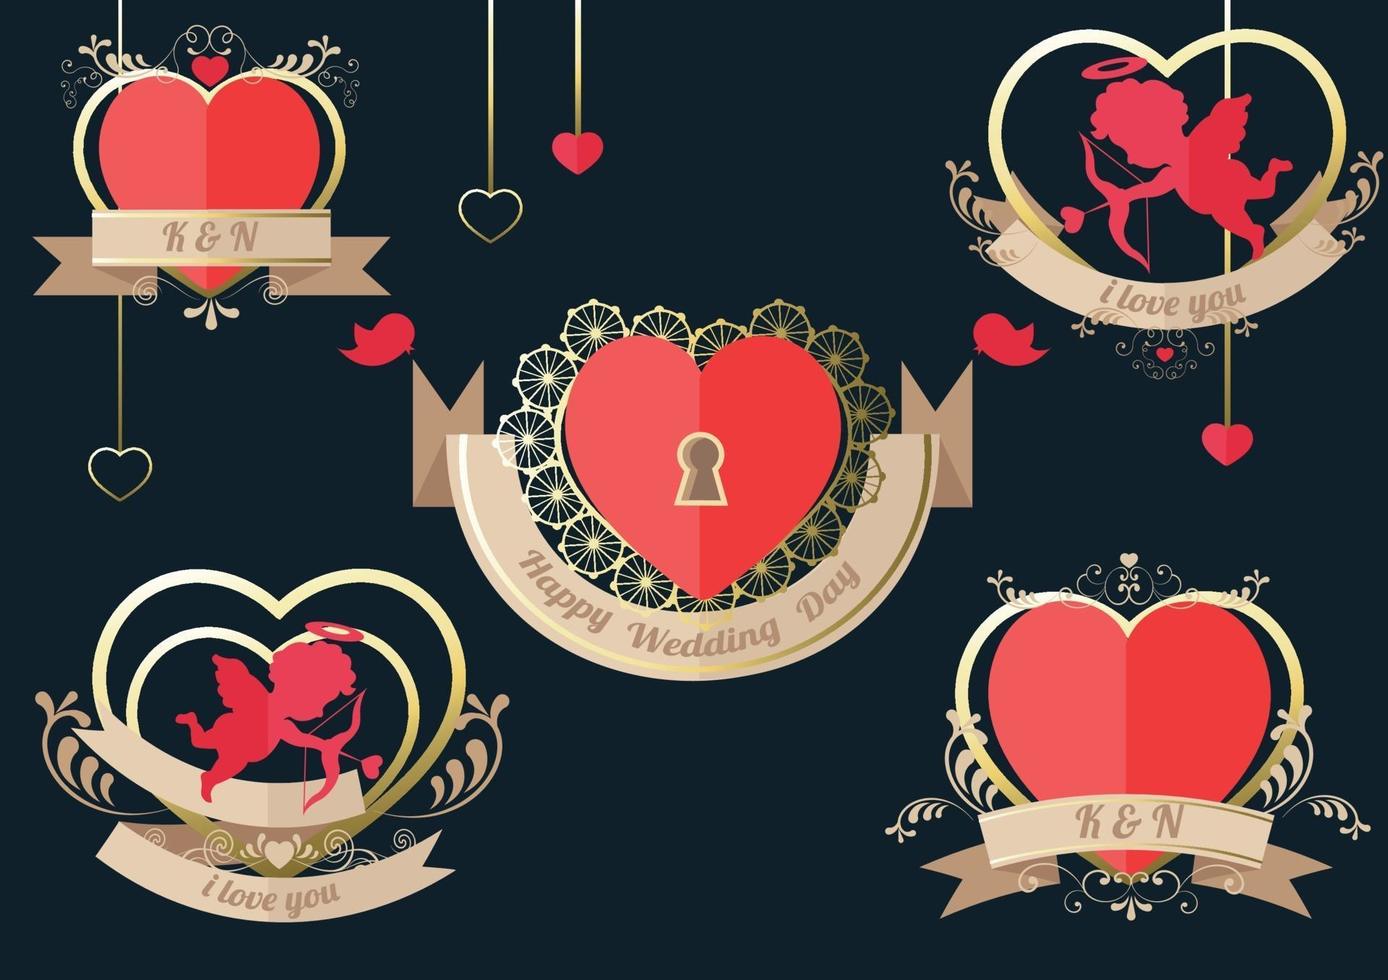 etiqueta de coração definida para cartão de casamento ou dia dos namorados vetor